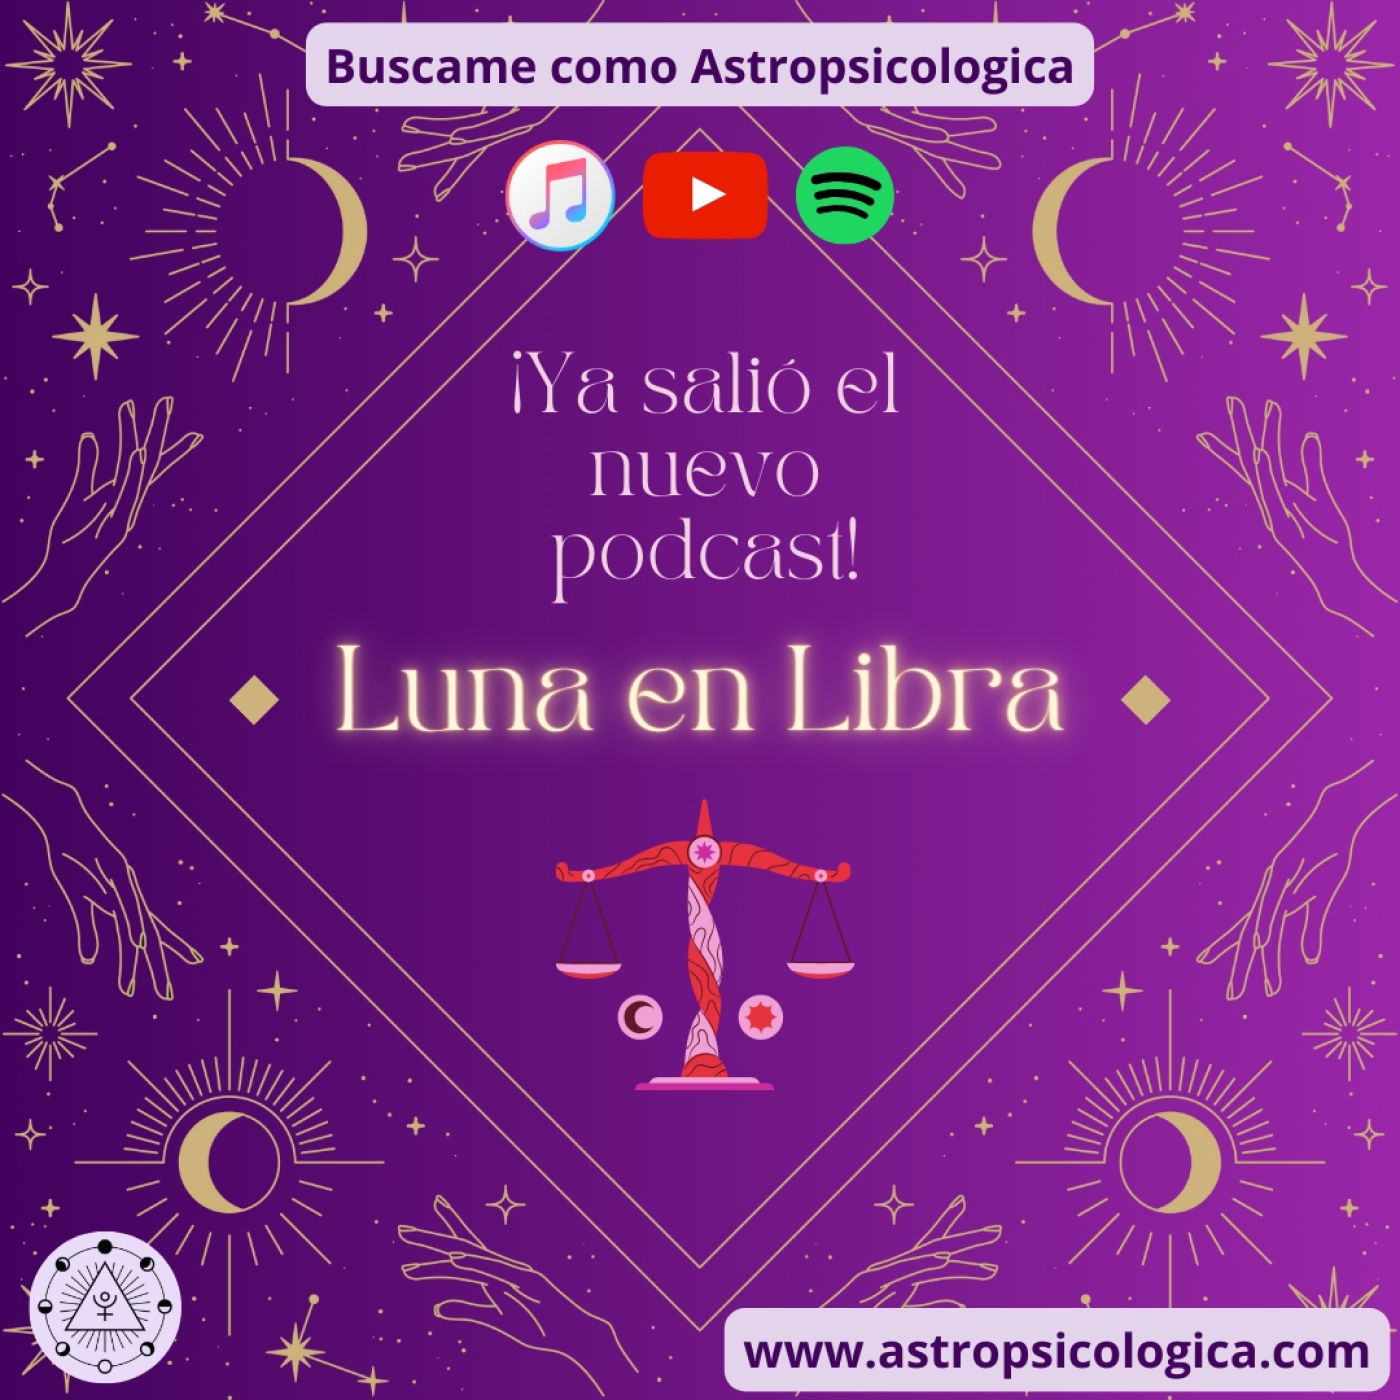 Luna en Libra